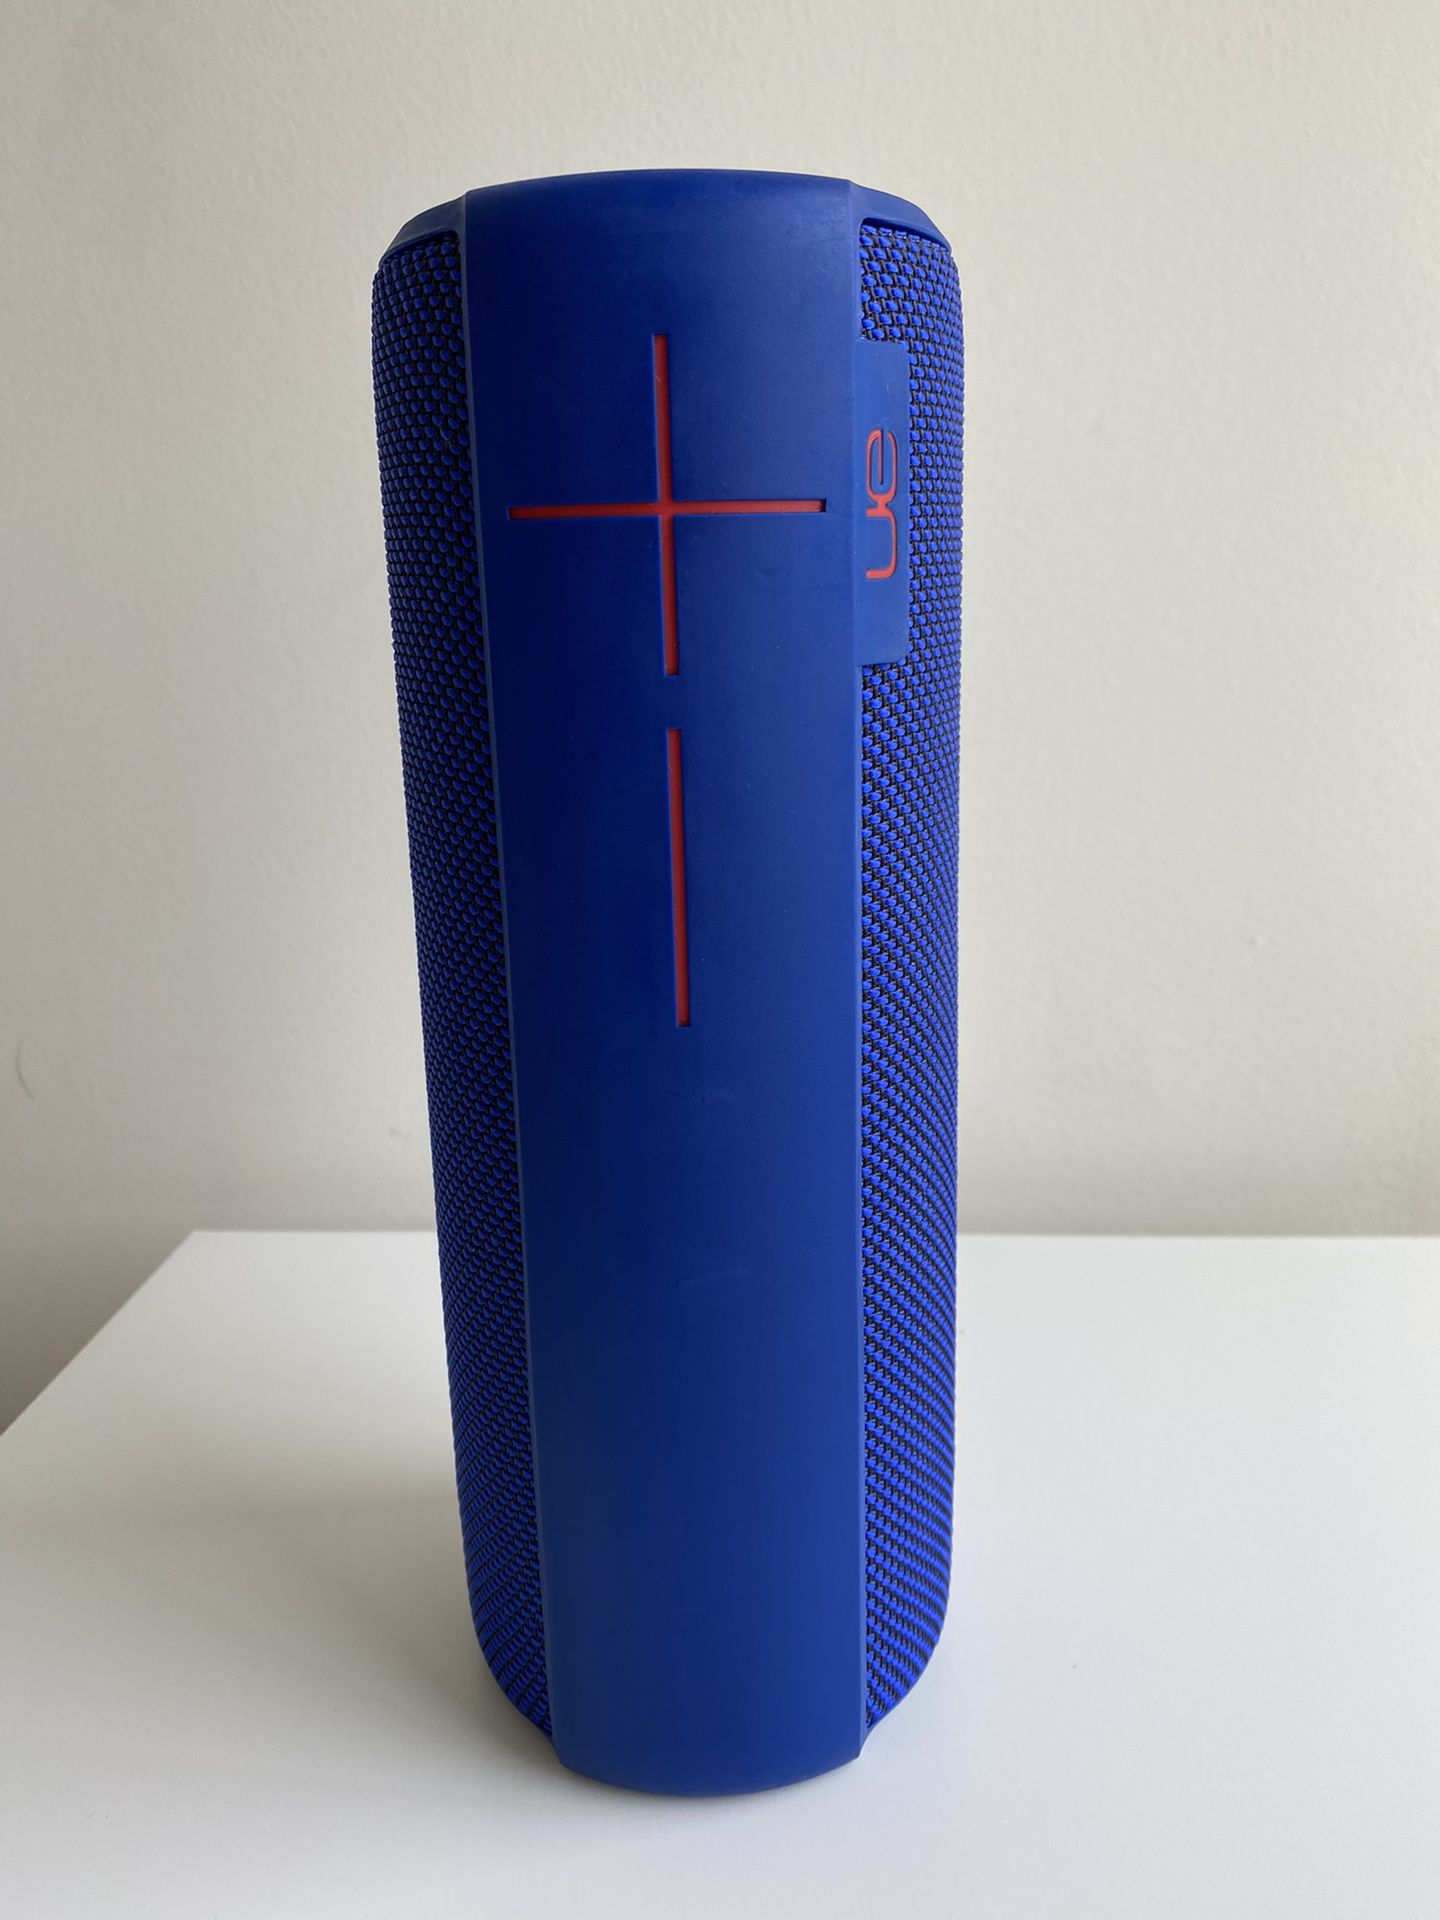 Ultimate Ears MEGABOOM Portable Waterproof & Shockproof Bluetooth Speaker Electric Blue